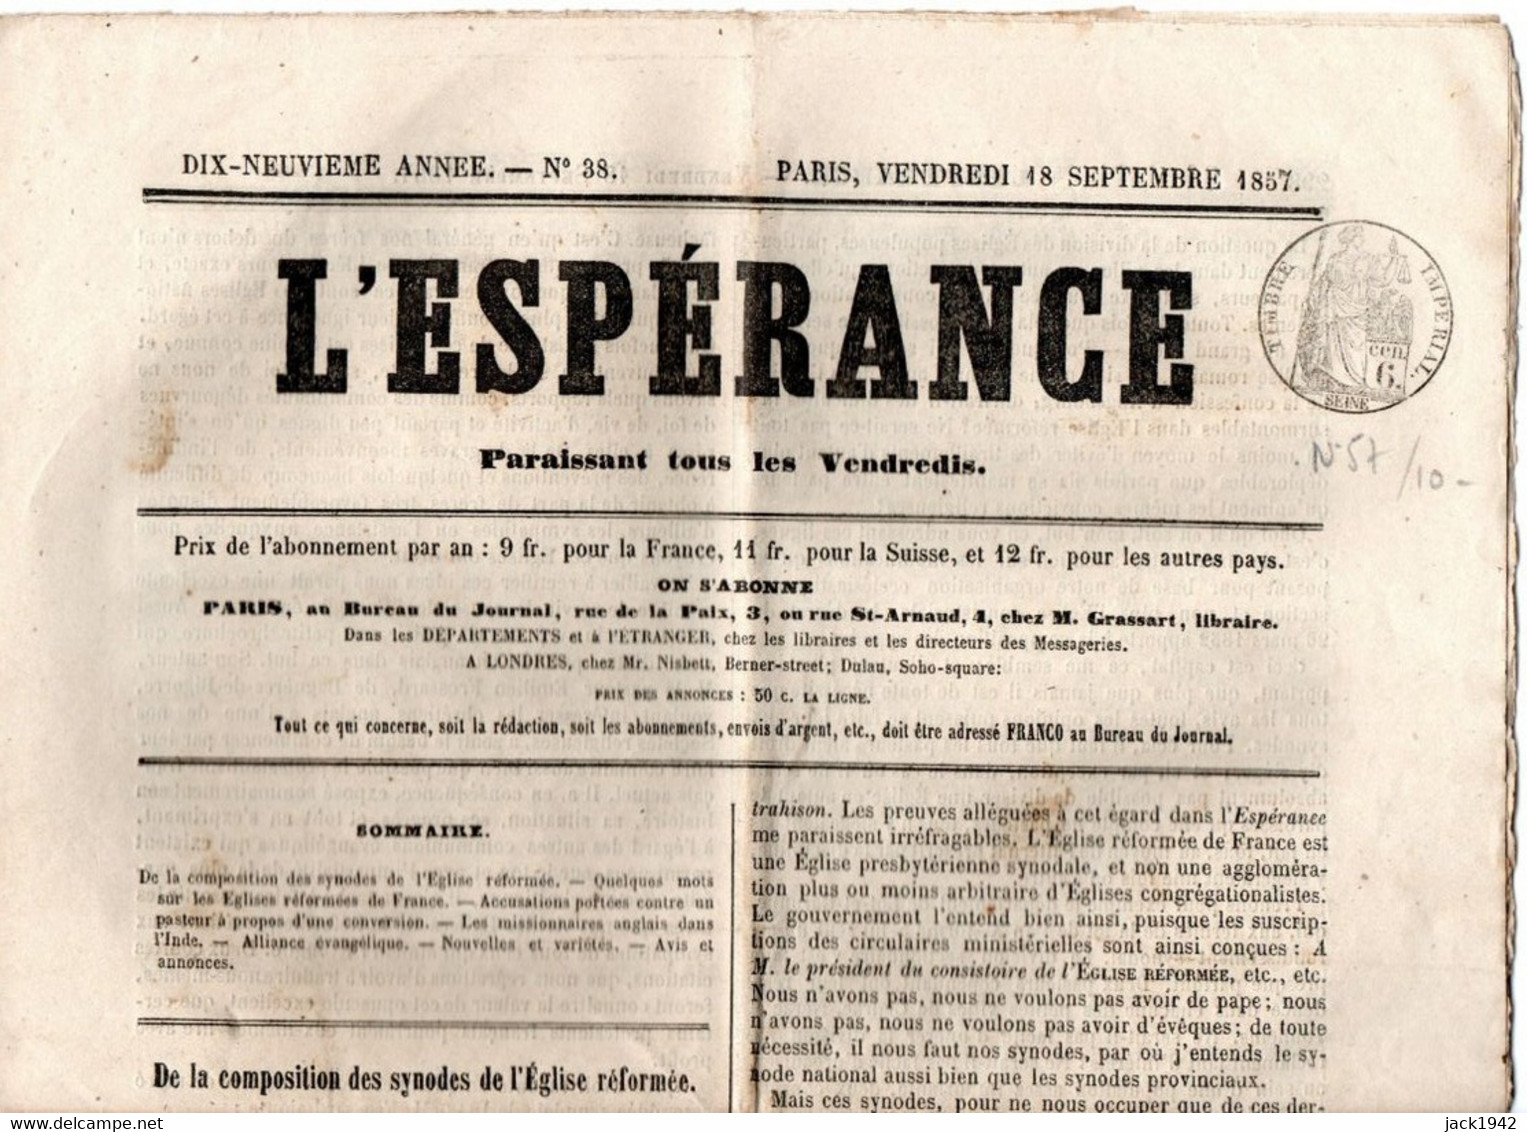 Journal L'Espérance Du 18 Septembre 1857, Avec Timbre Humide " Timbre / Impérial 6 Centimes" - Giornali